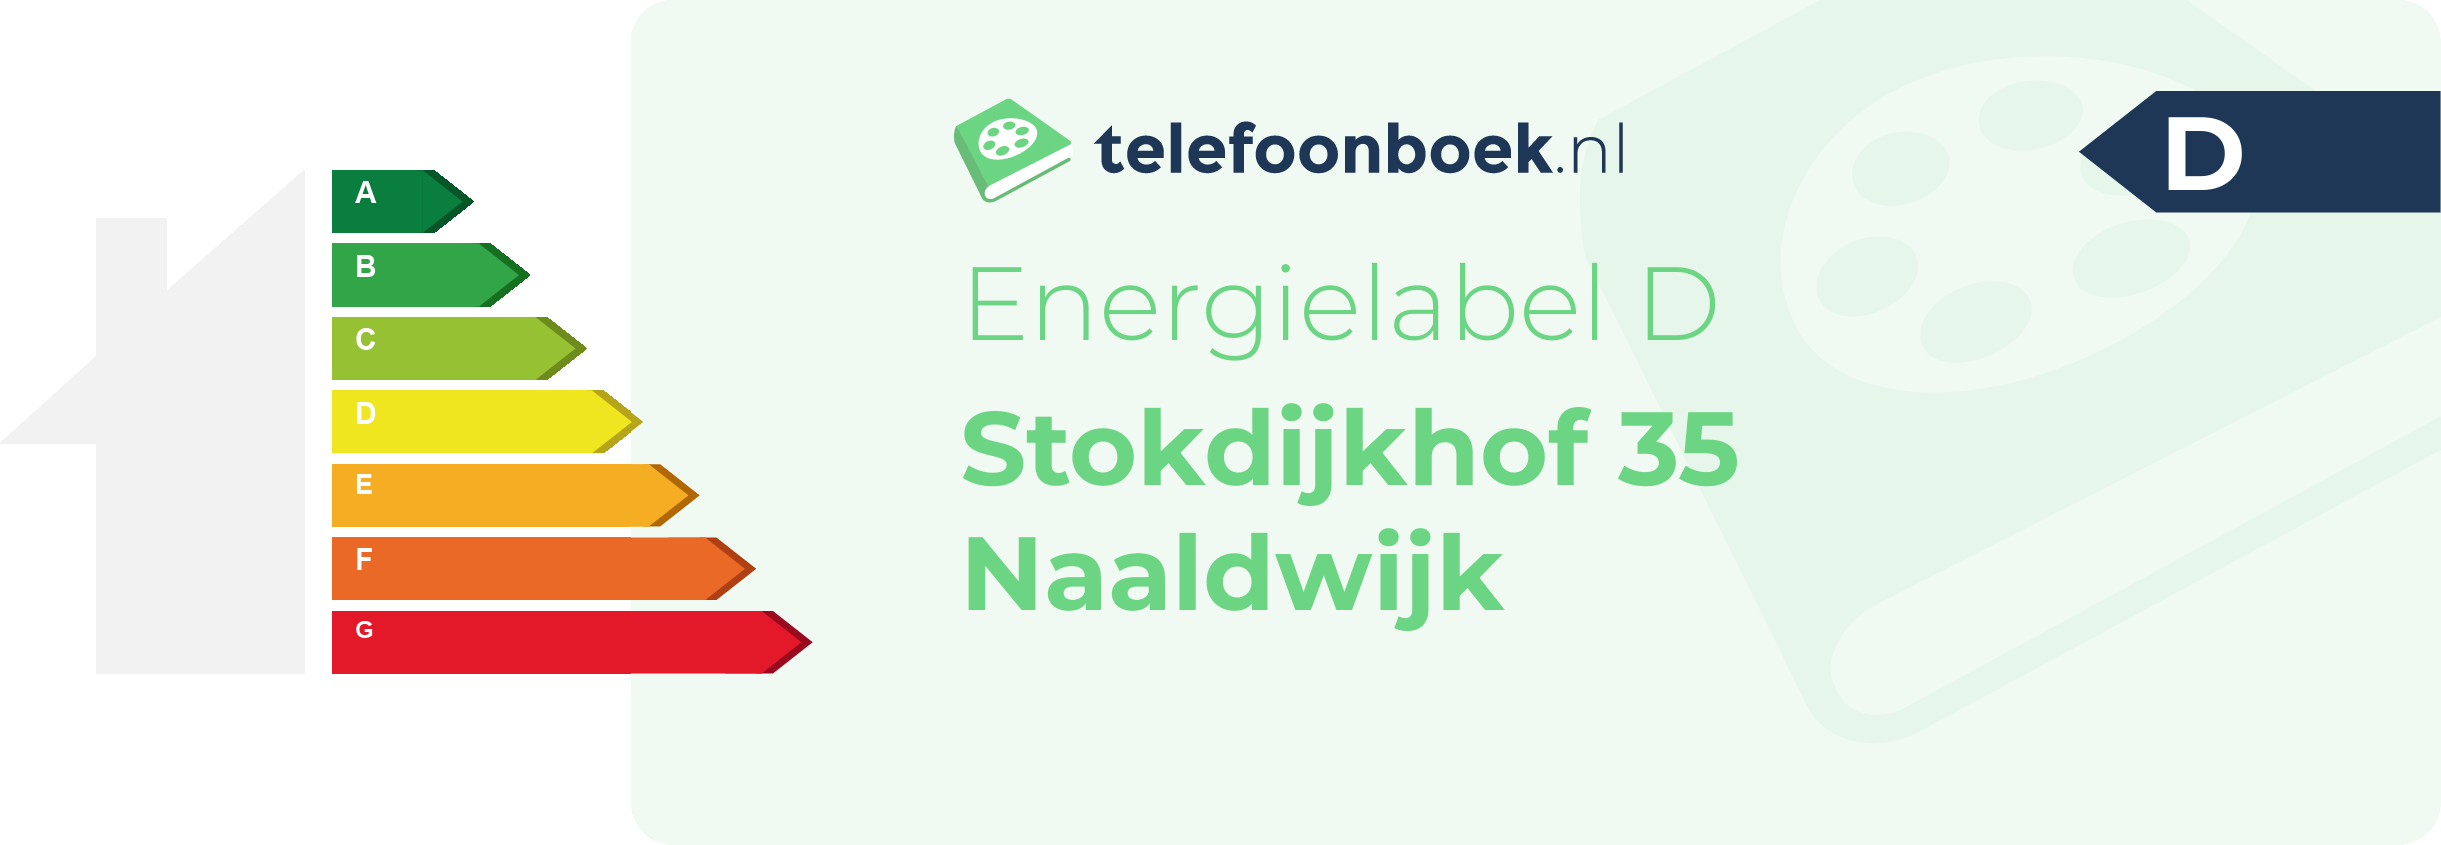 Energielabel Stokdijkhof 35 Naaldwijk